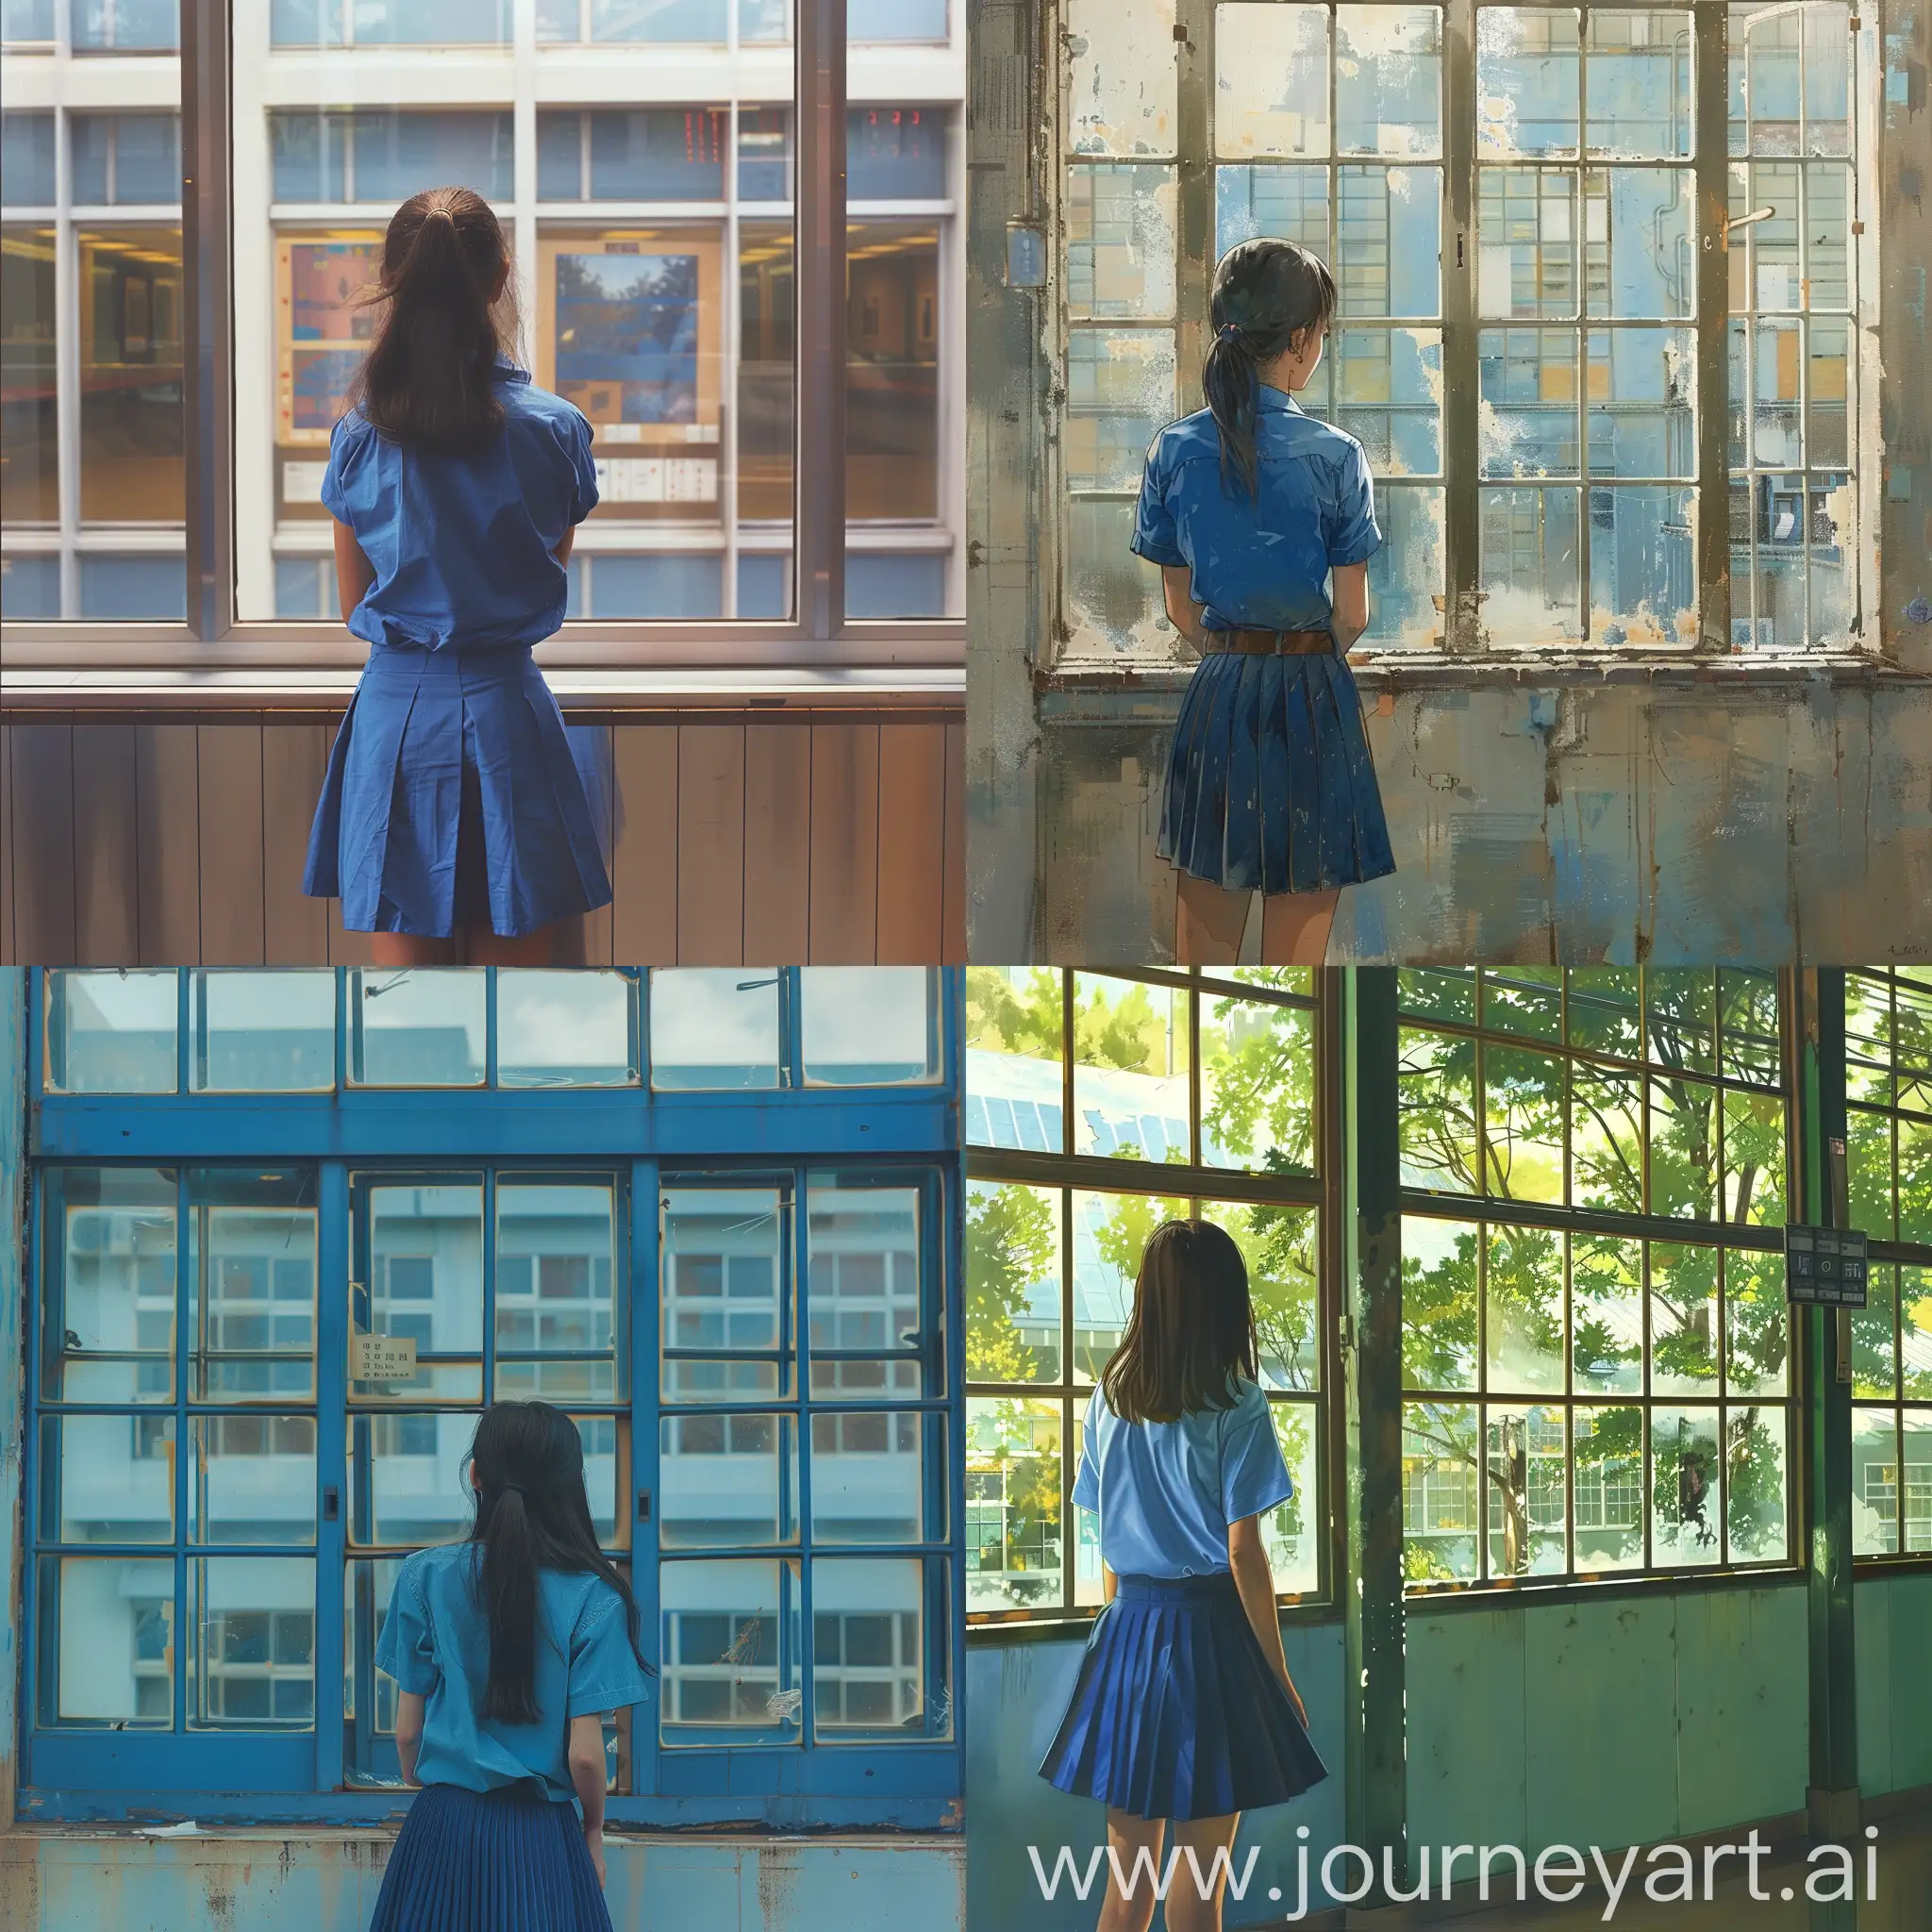 Девушка в синей рубашке и юбке задумчиво смотрит в окна учебного заведения.